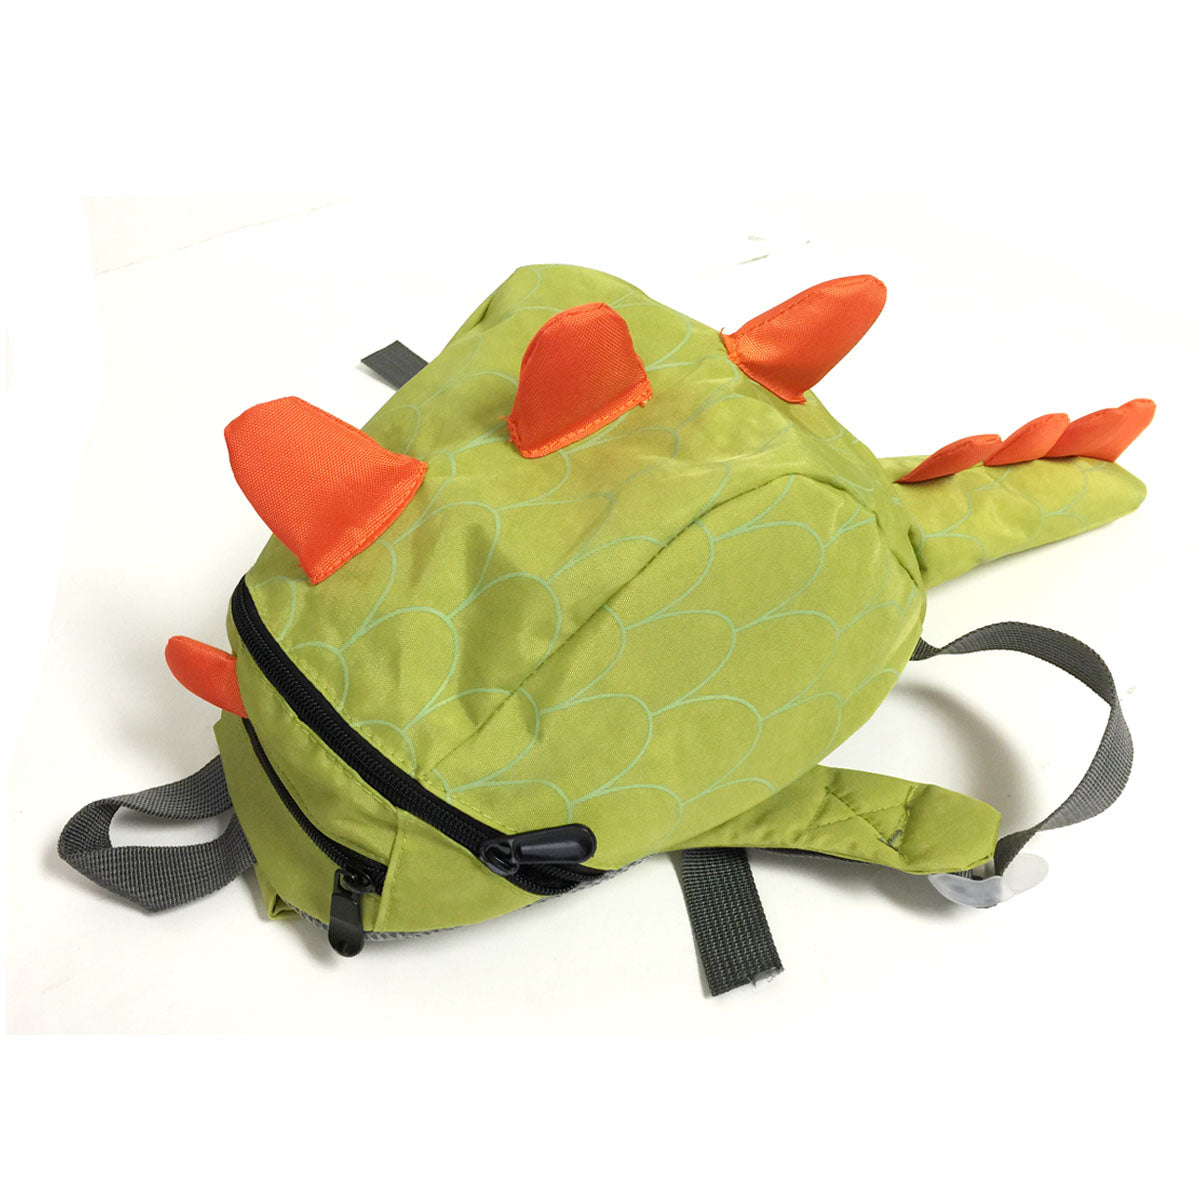 Kids Waterproof Dinosaur School Backpack — More than a backpack